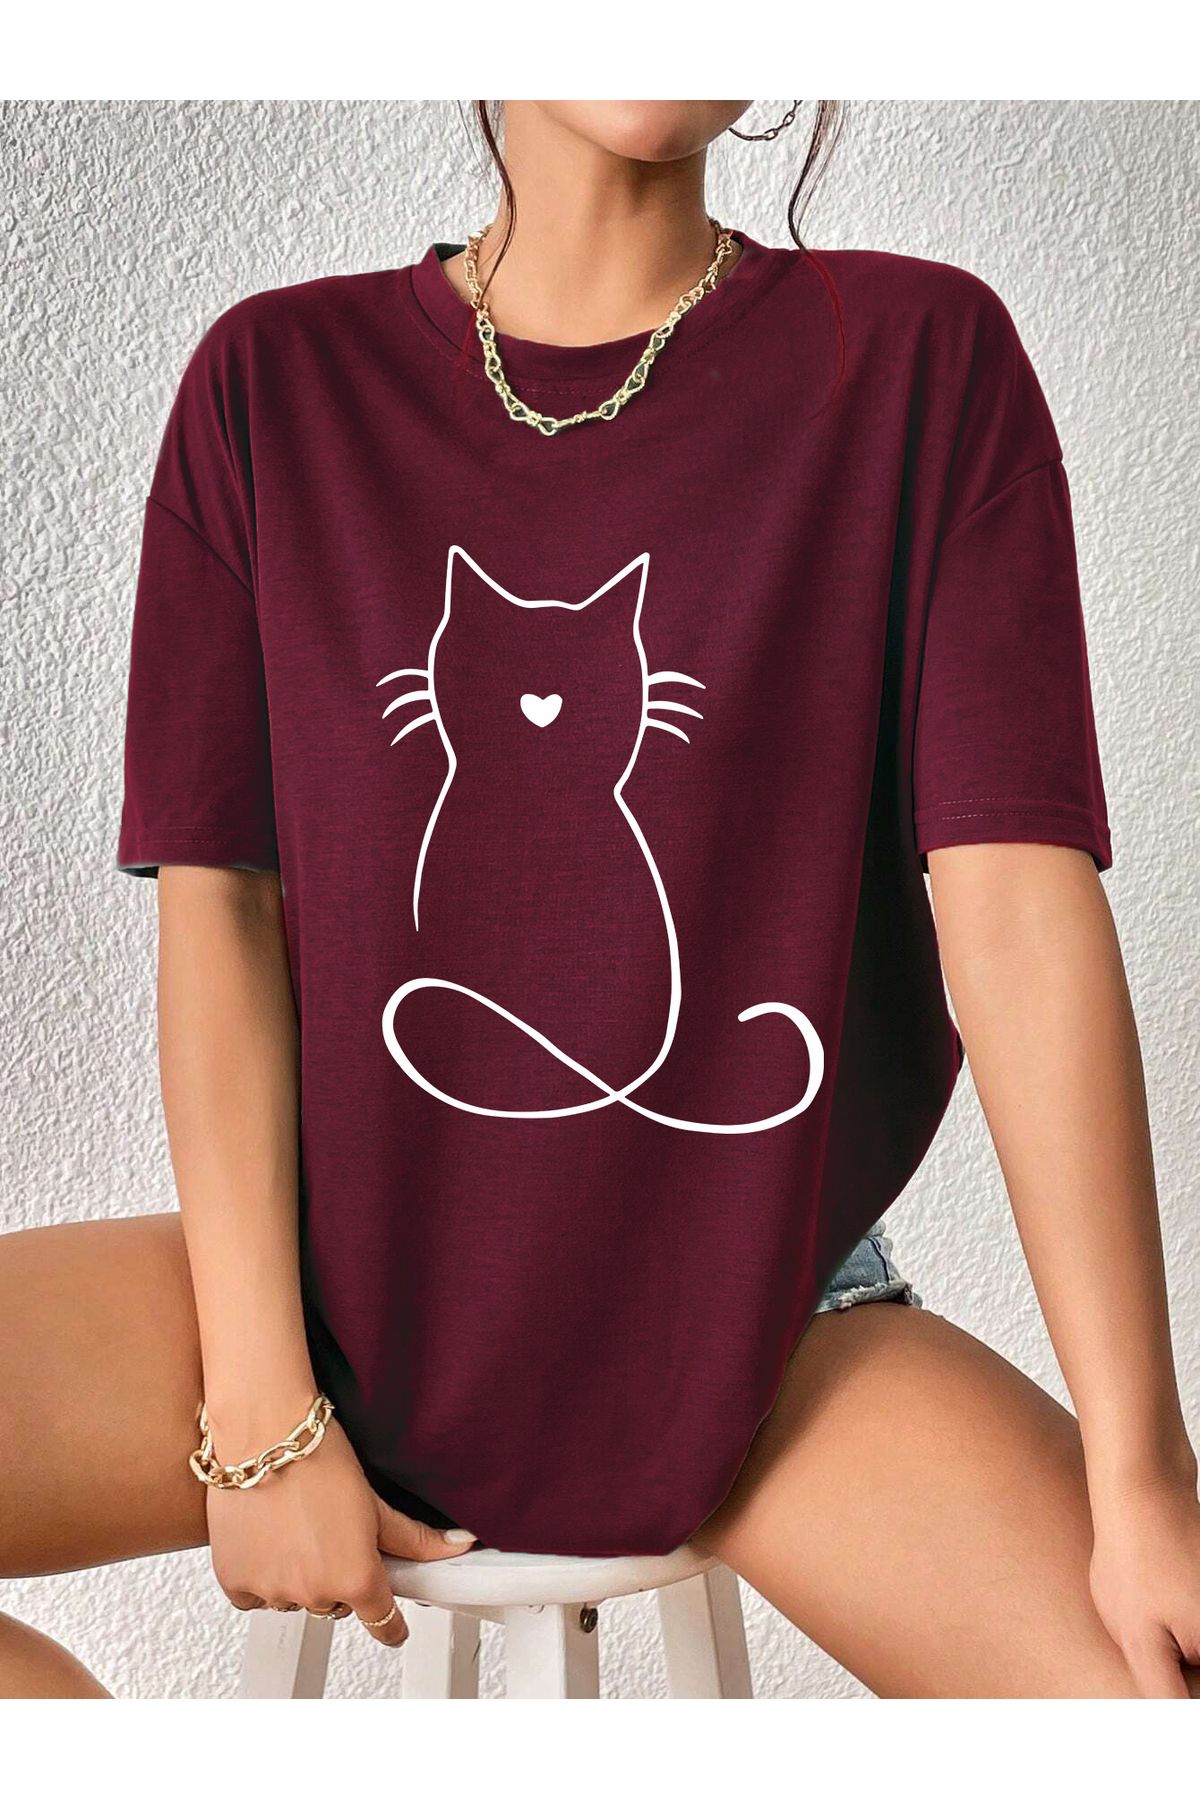 aynewmoda oversize kedi baskılı T-shirt